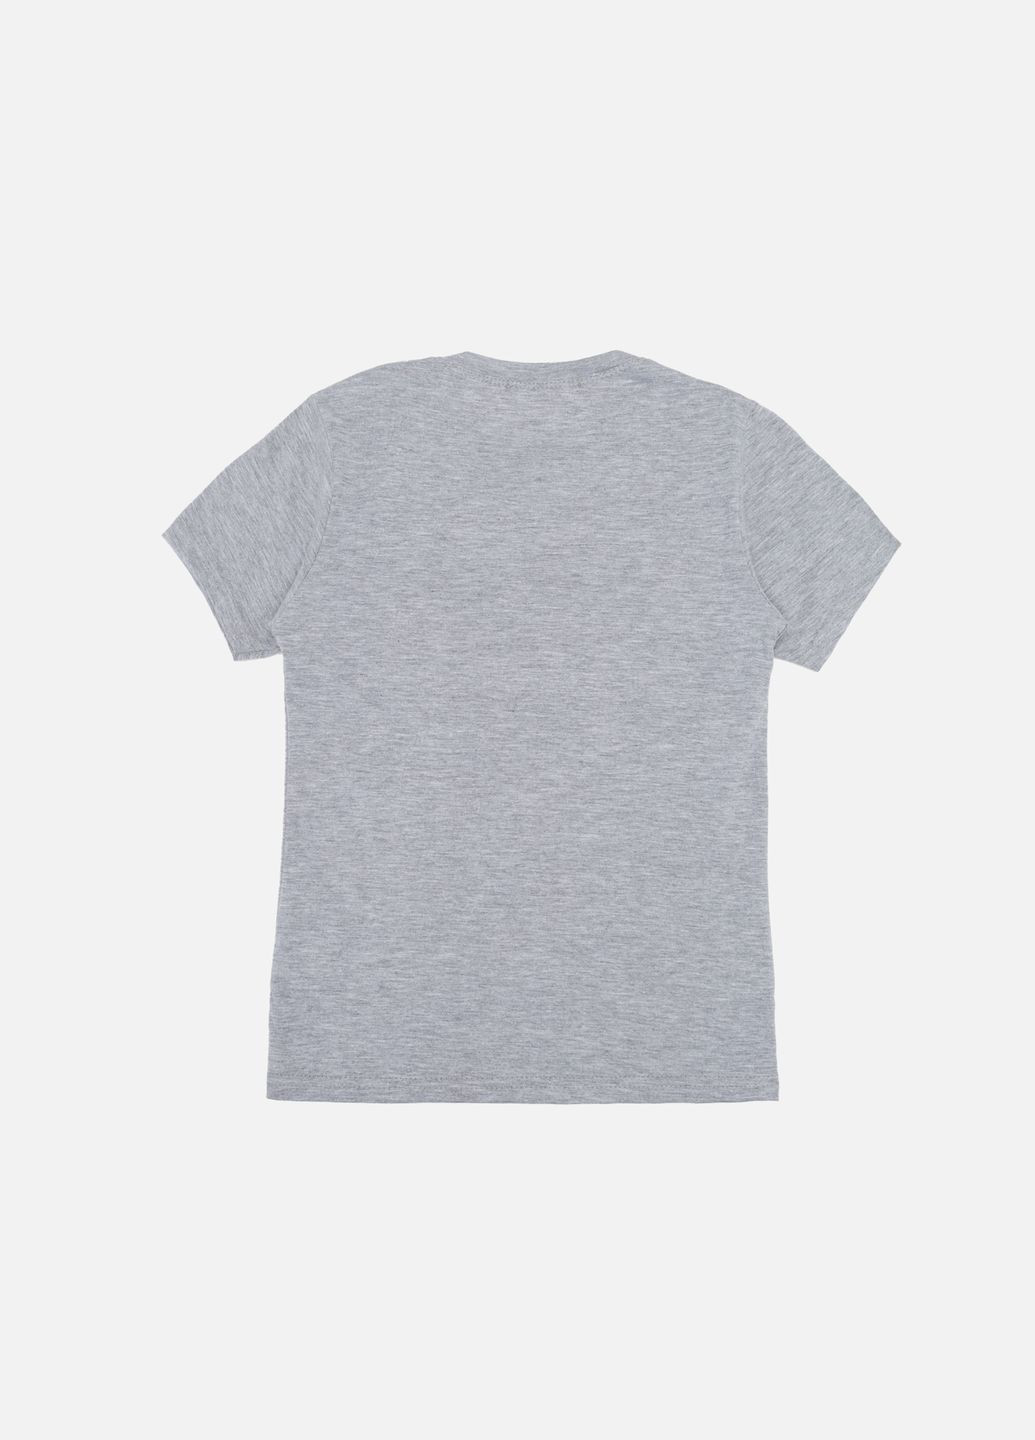 Серая летняя футболка с коротким рукавом для мальчика цвет серый цб-00243966 Essu